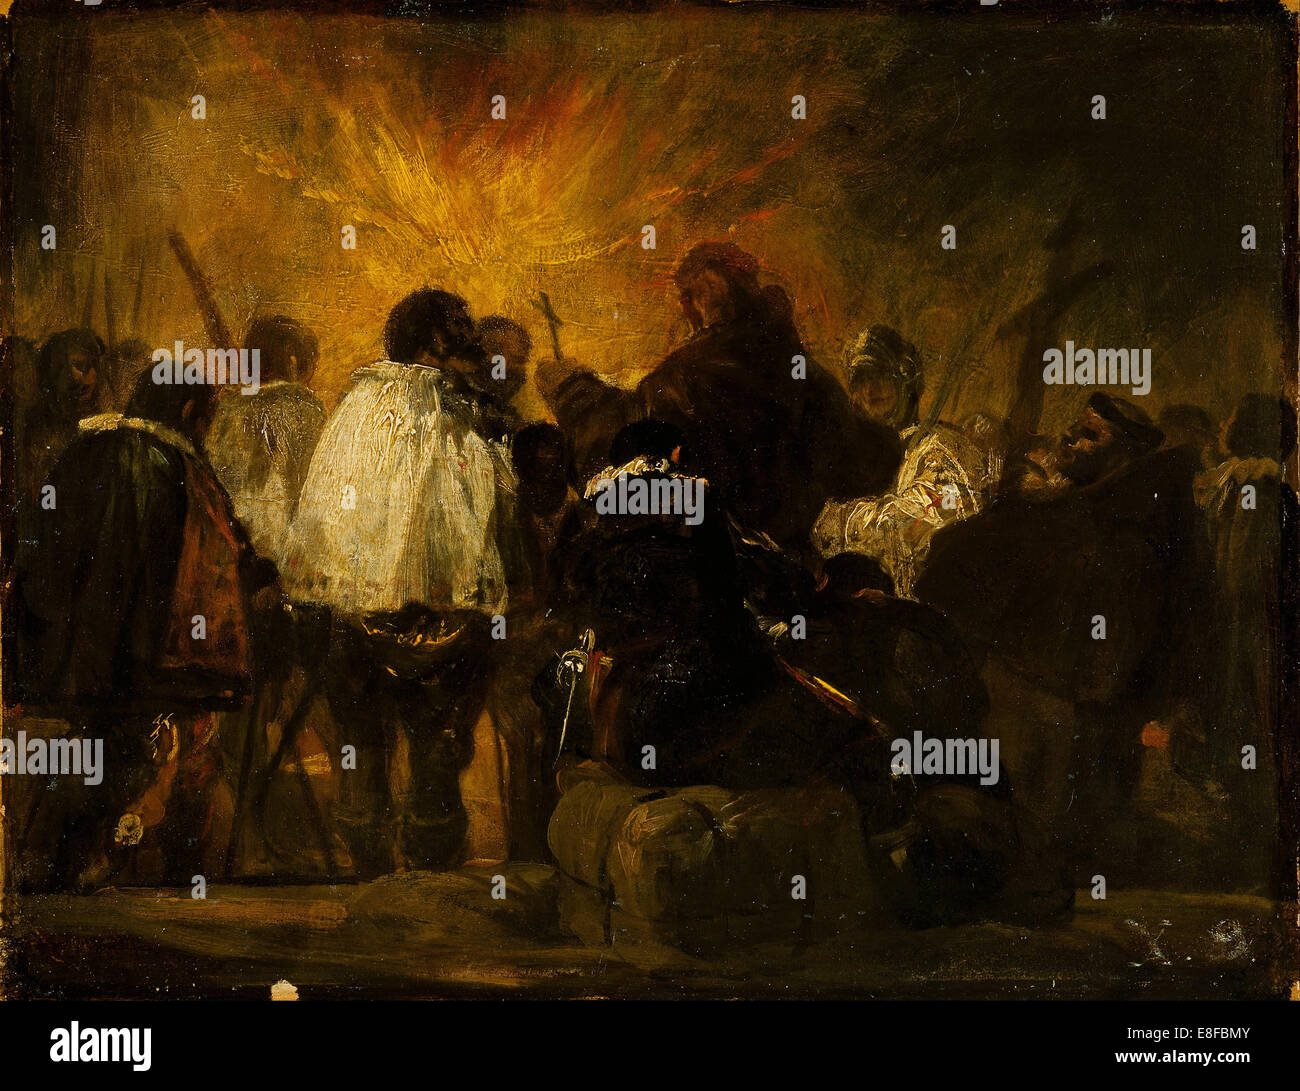 Nuit de l'Inquisition. Artiste : Goya, Francisco de (1746-1828) Banque D'Images